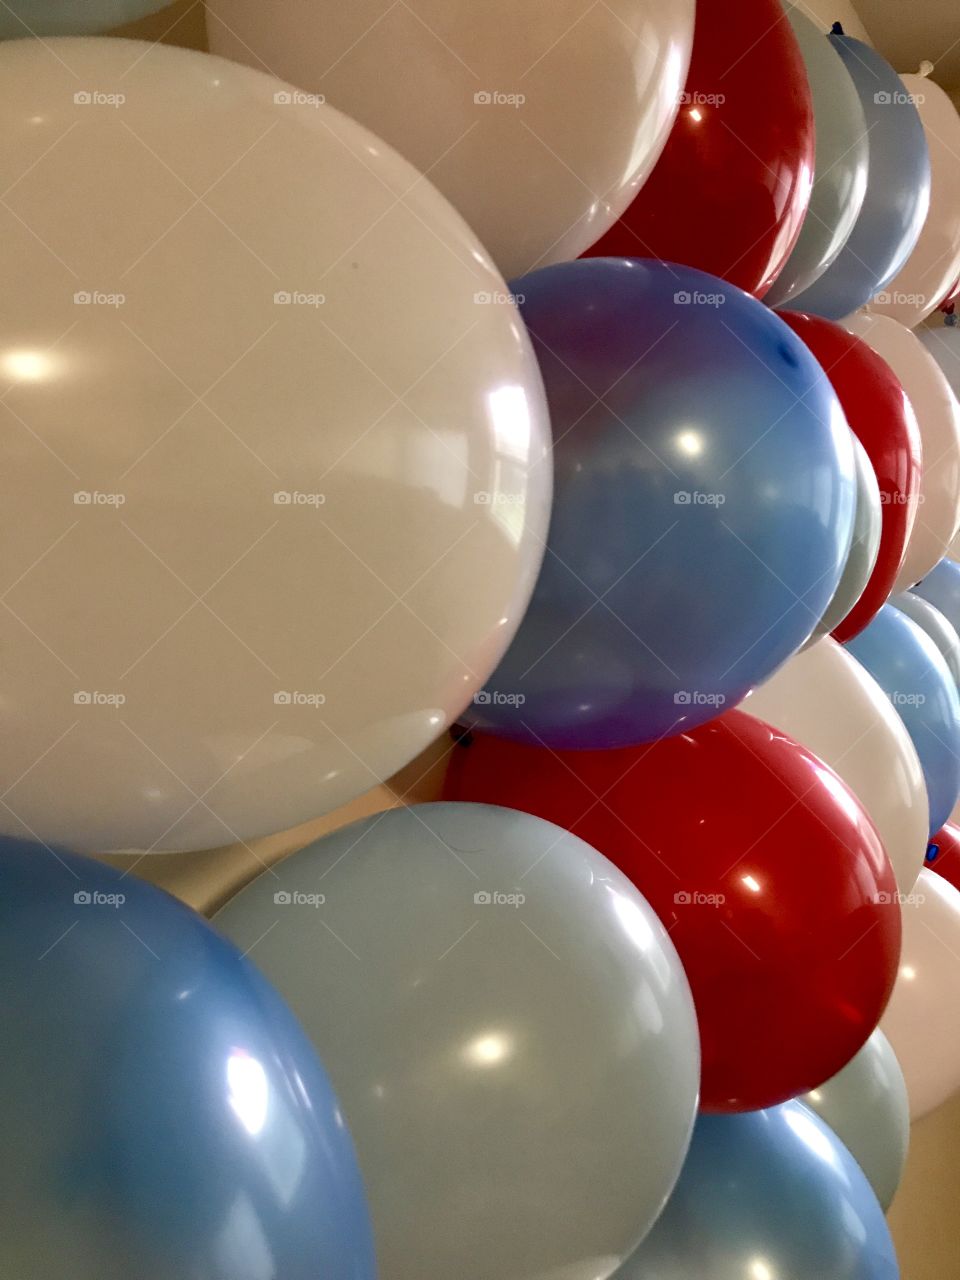 Balloons
